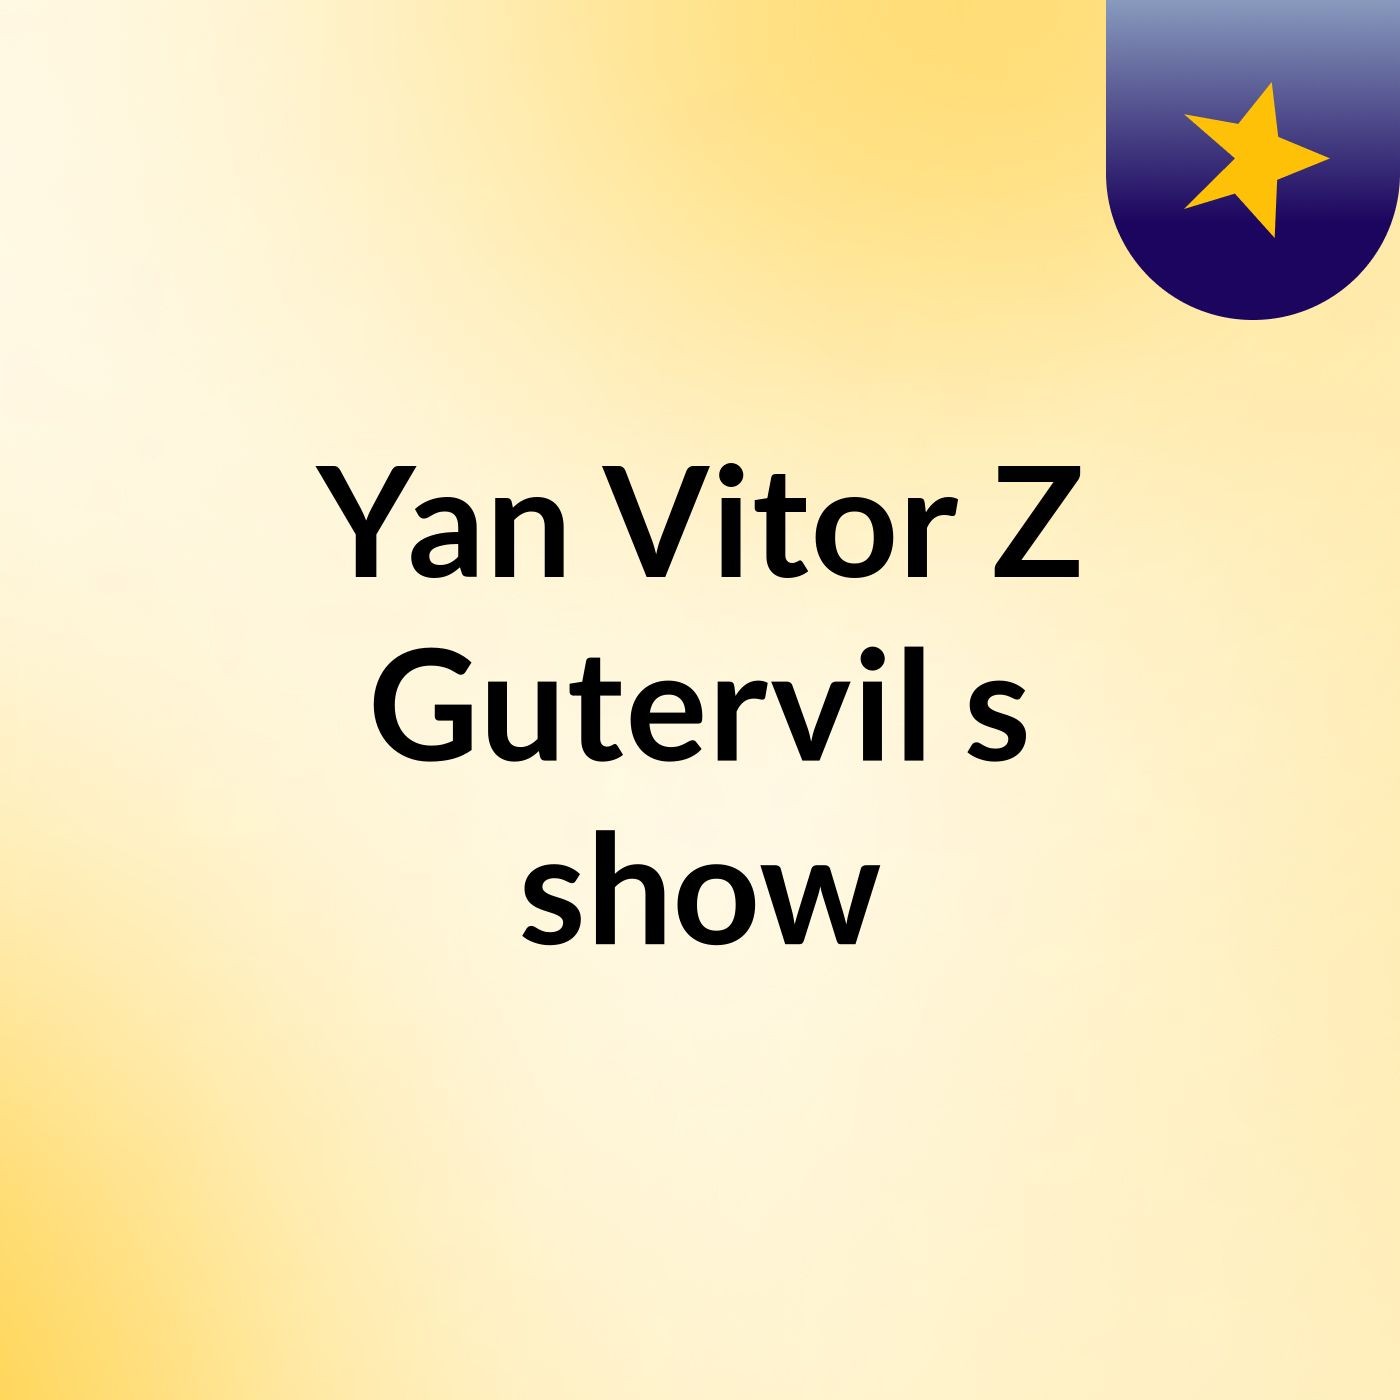 Yan Vitor Z Gutervil's show